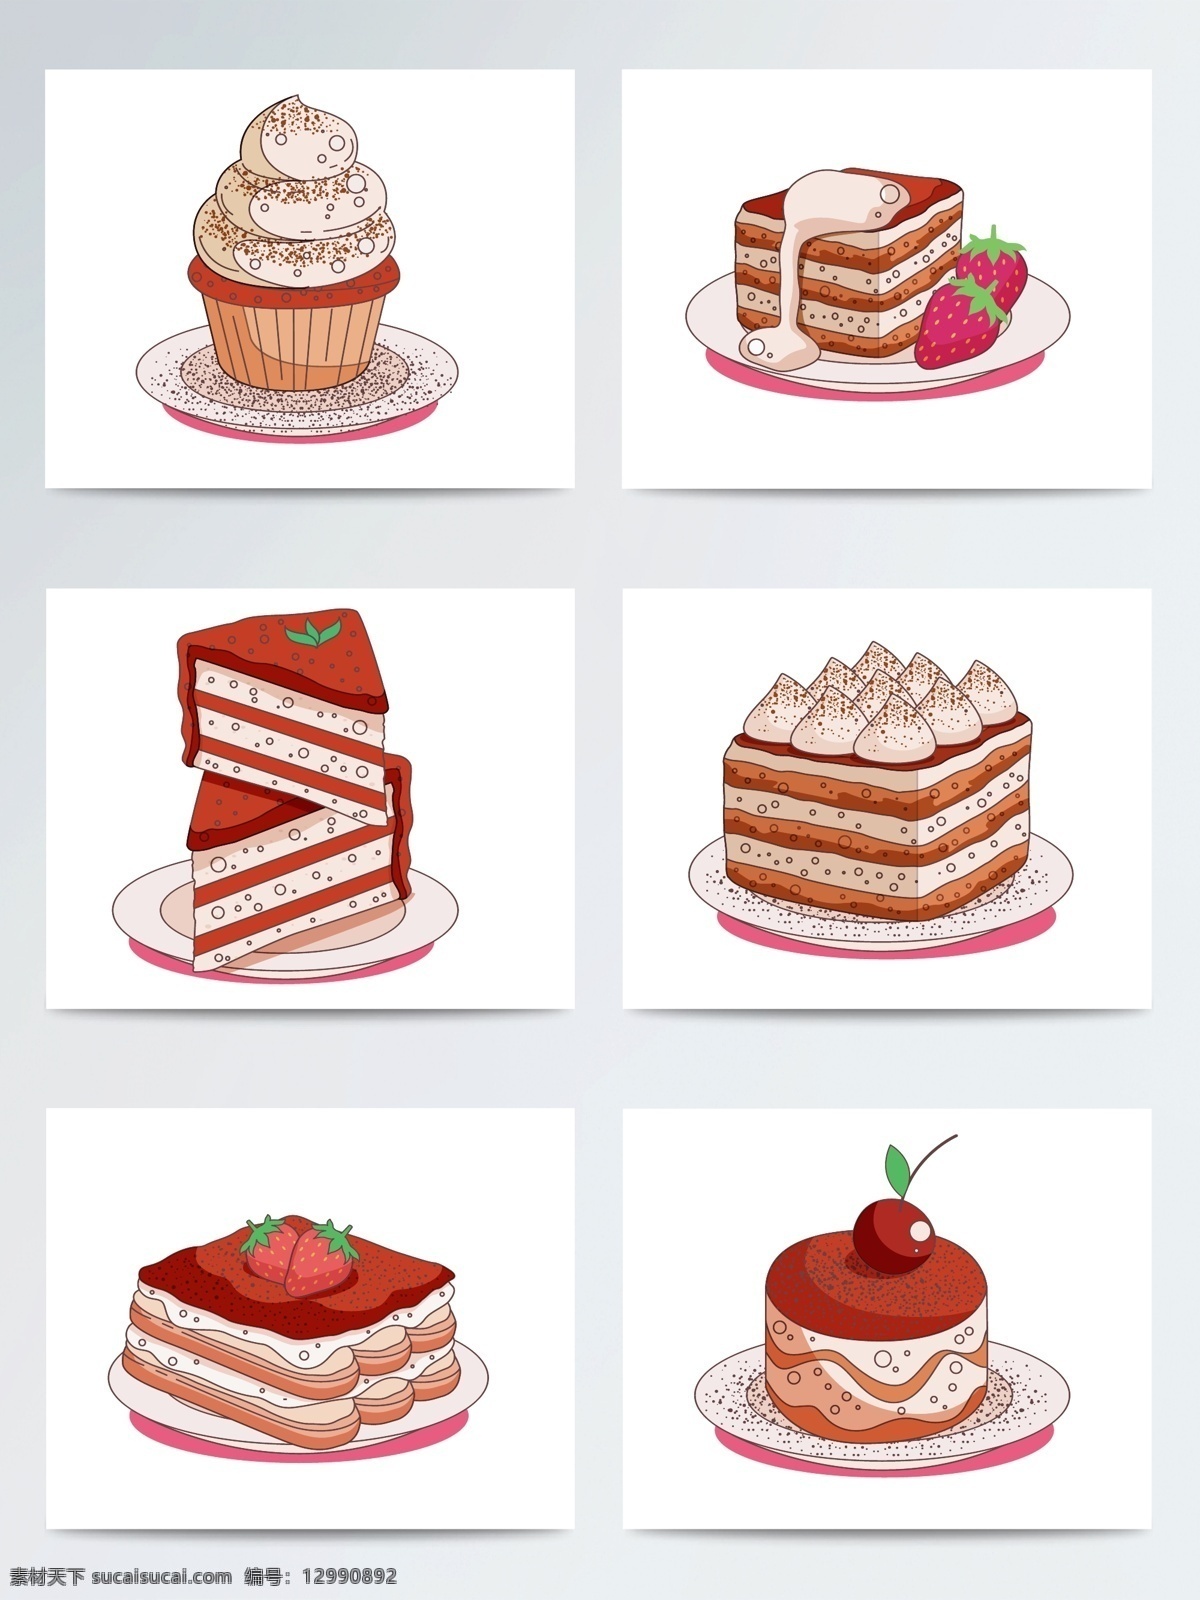 手绘 创意 蛋糕 甜品 矢量素材 手绘插画 食物 手绘蛋糕 ai素材 手绘甜品 甜点 巧克力蛋糕